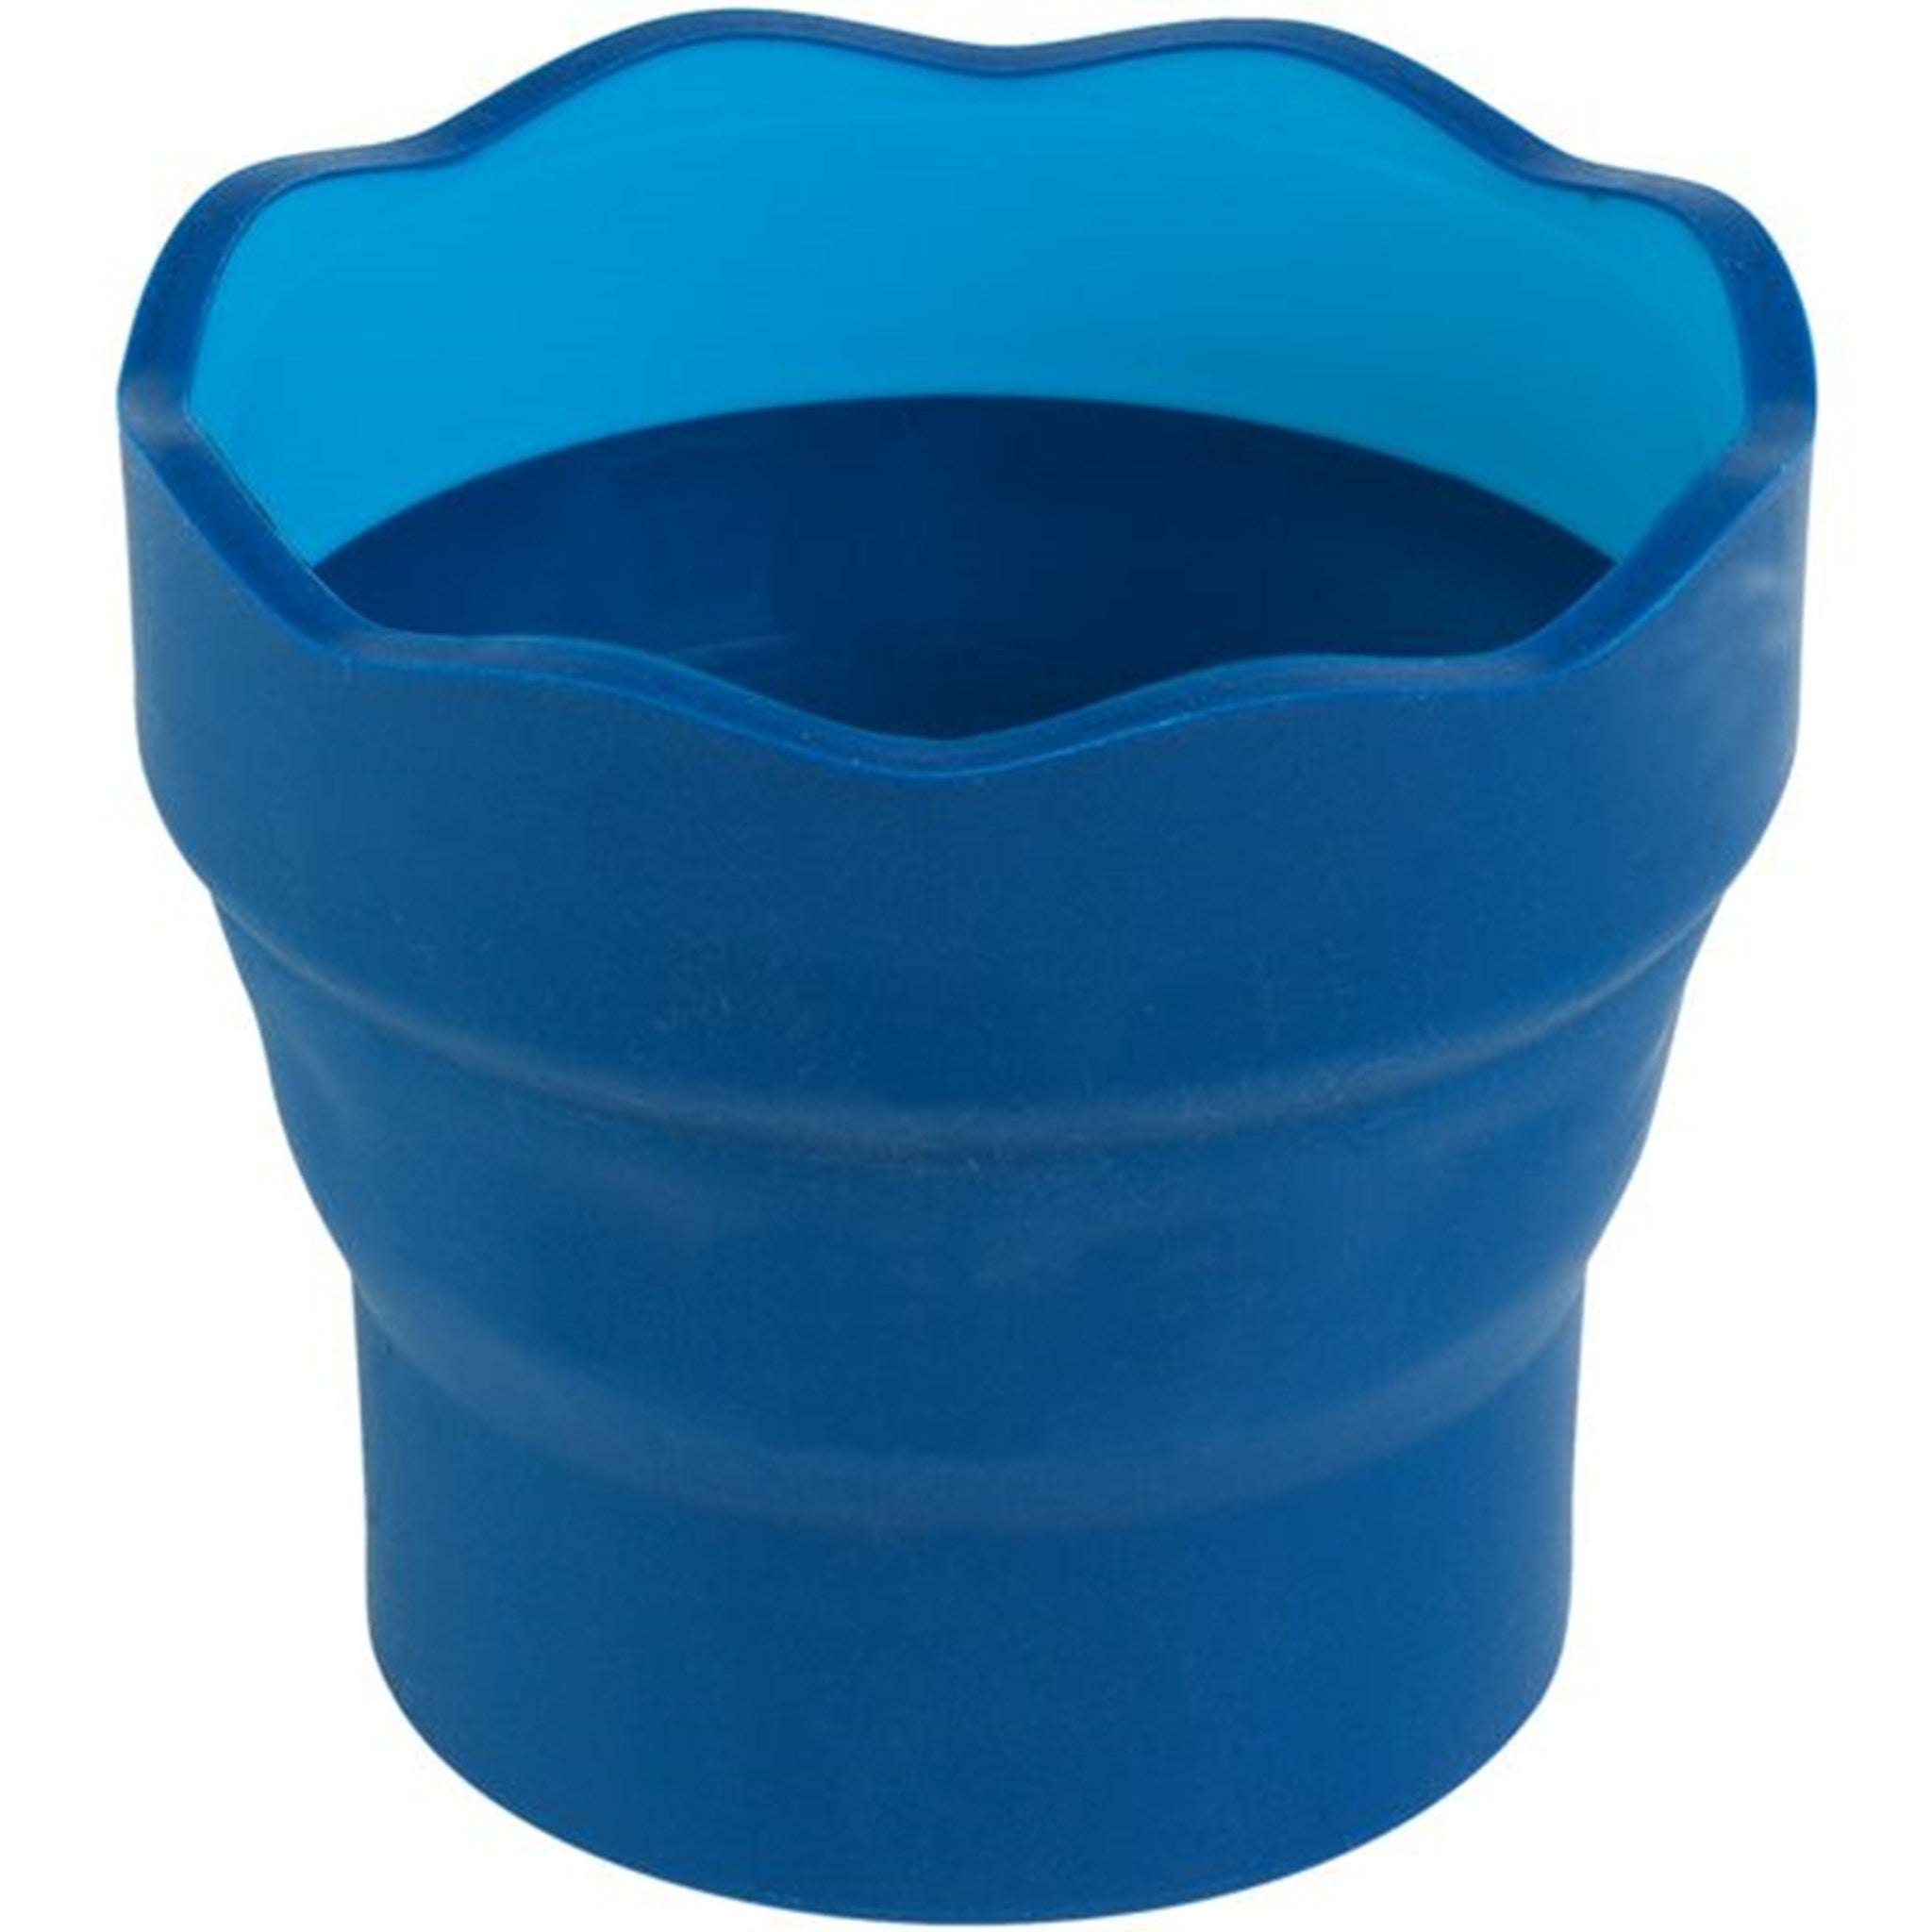 Faber Castell Water Pot Blue 2